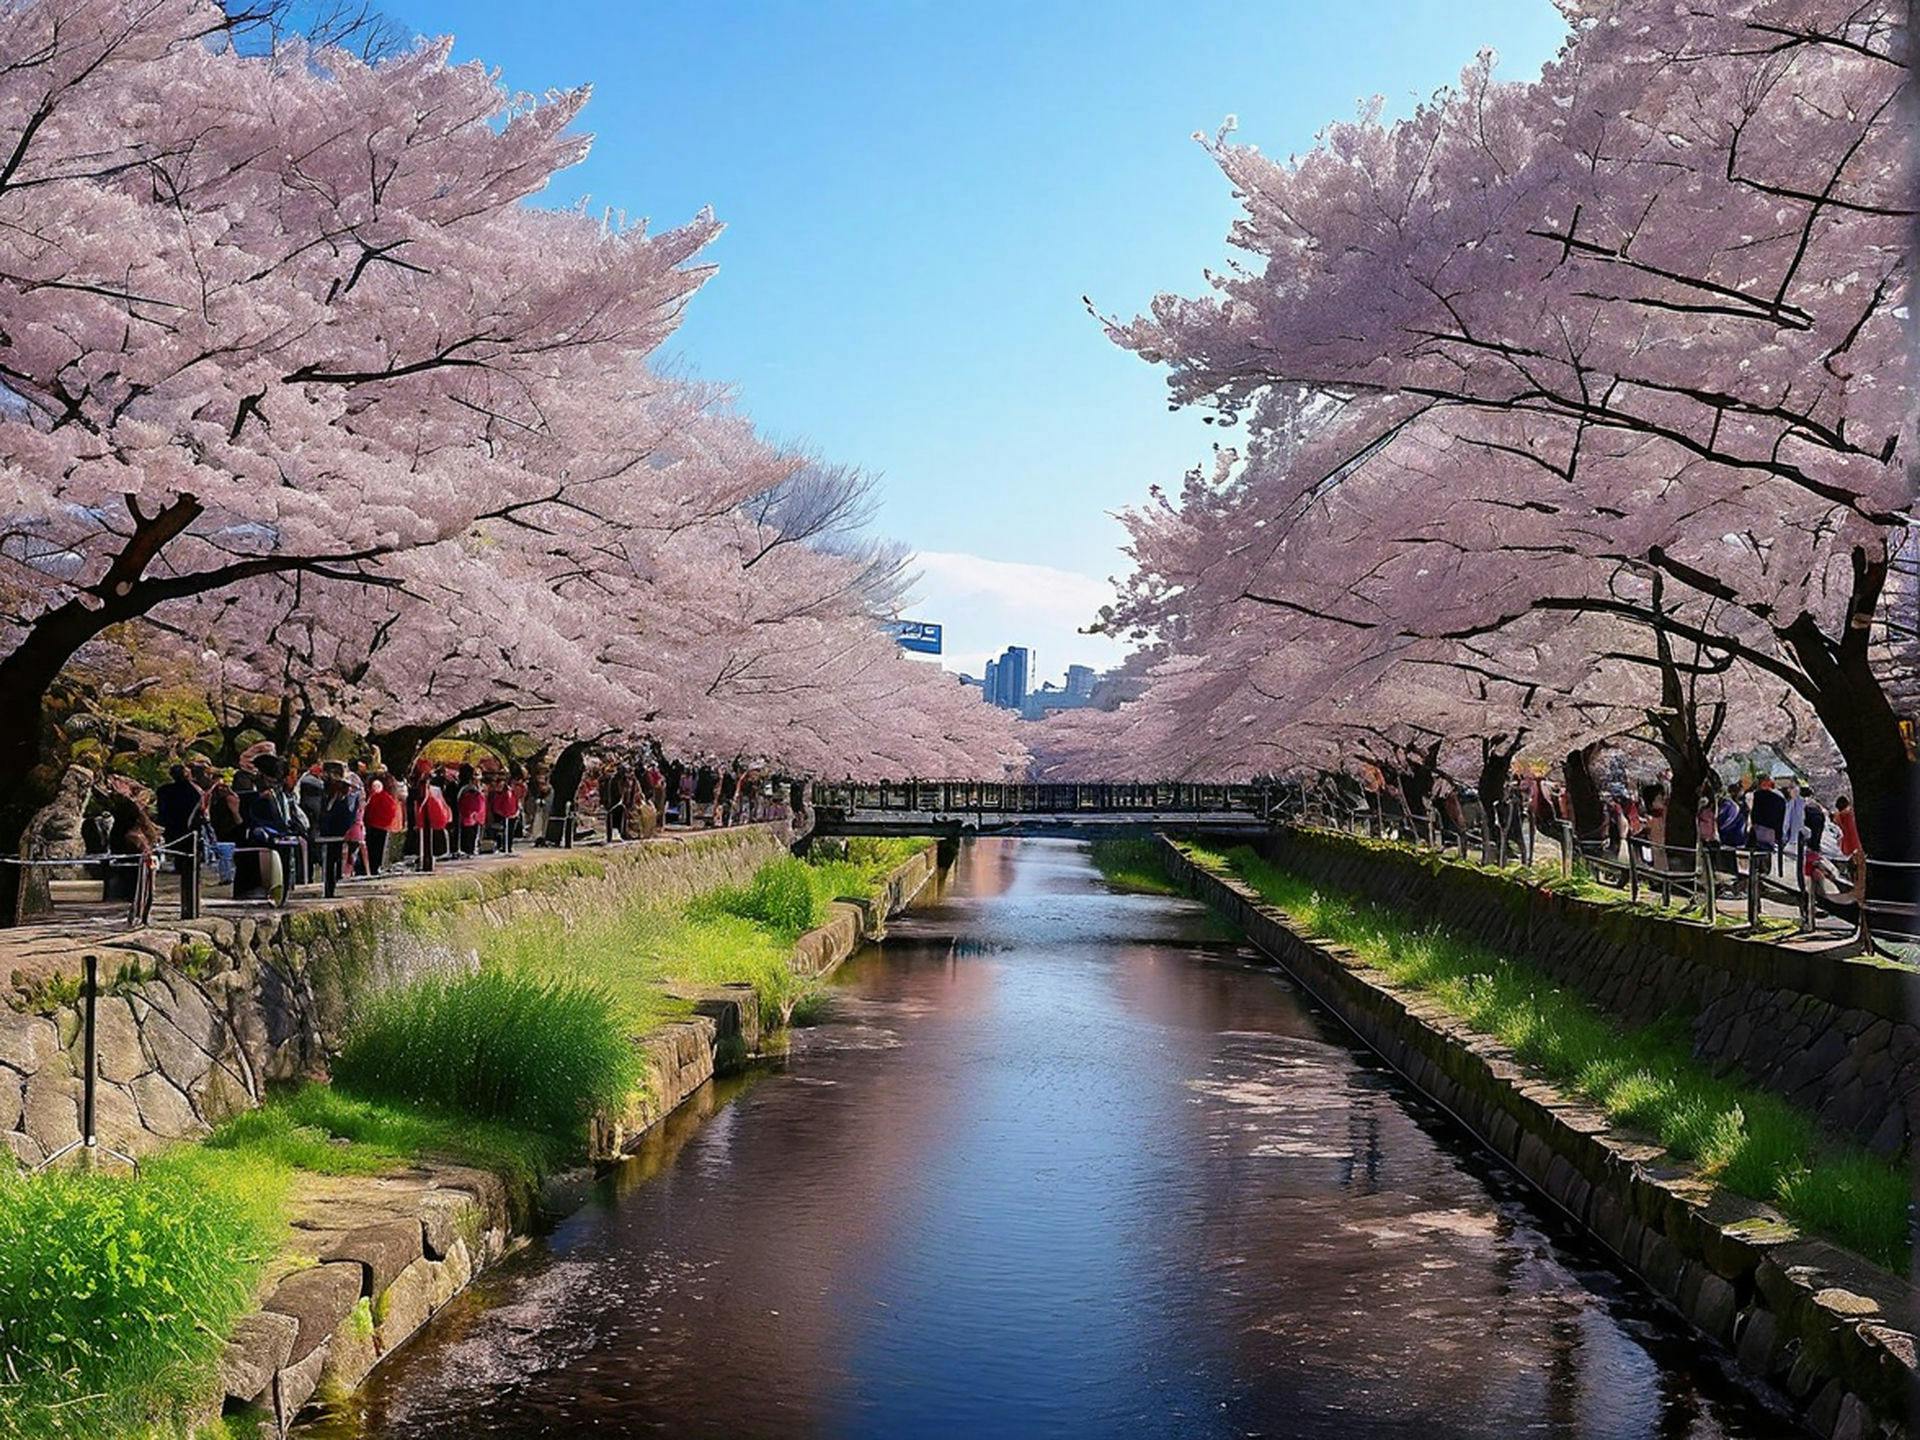 Cherry Blossoms in Full Bloom for Hanami Festival